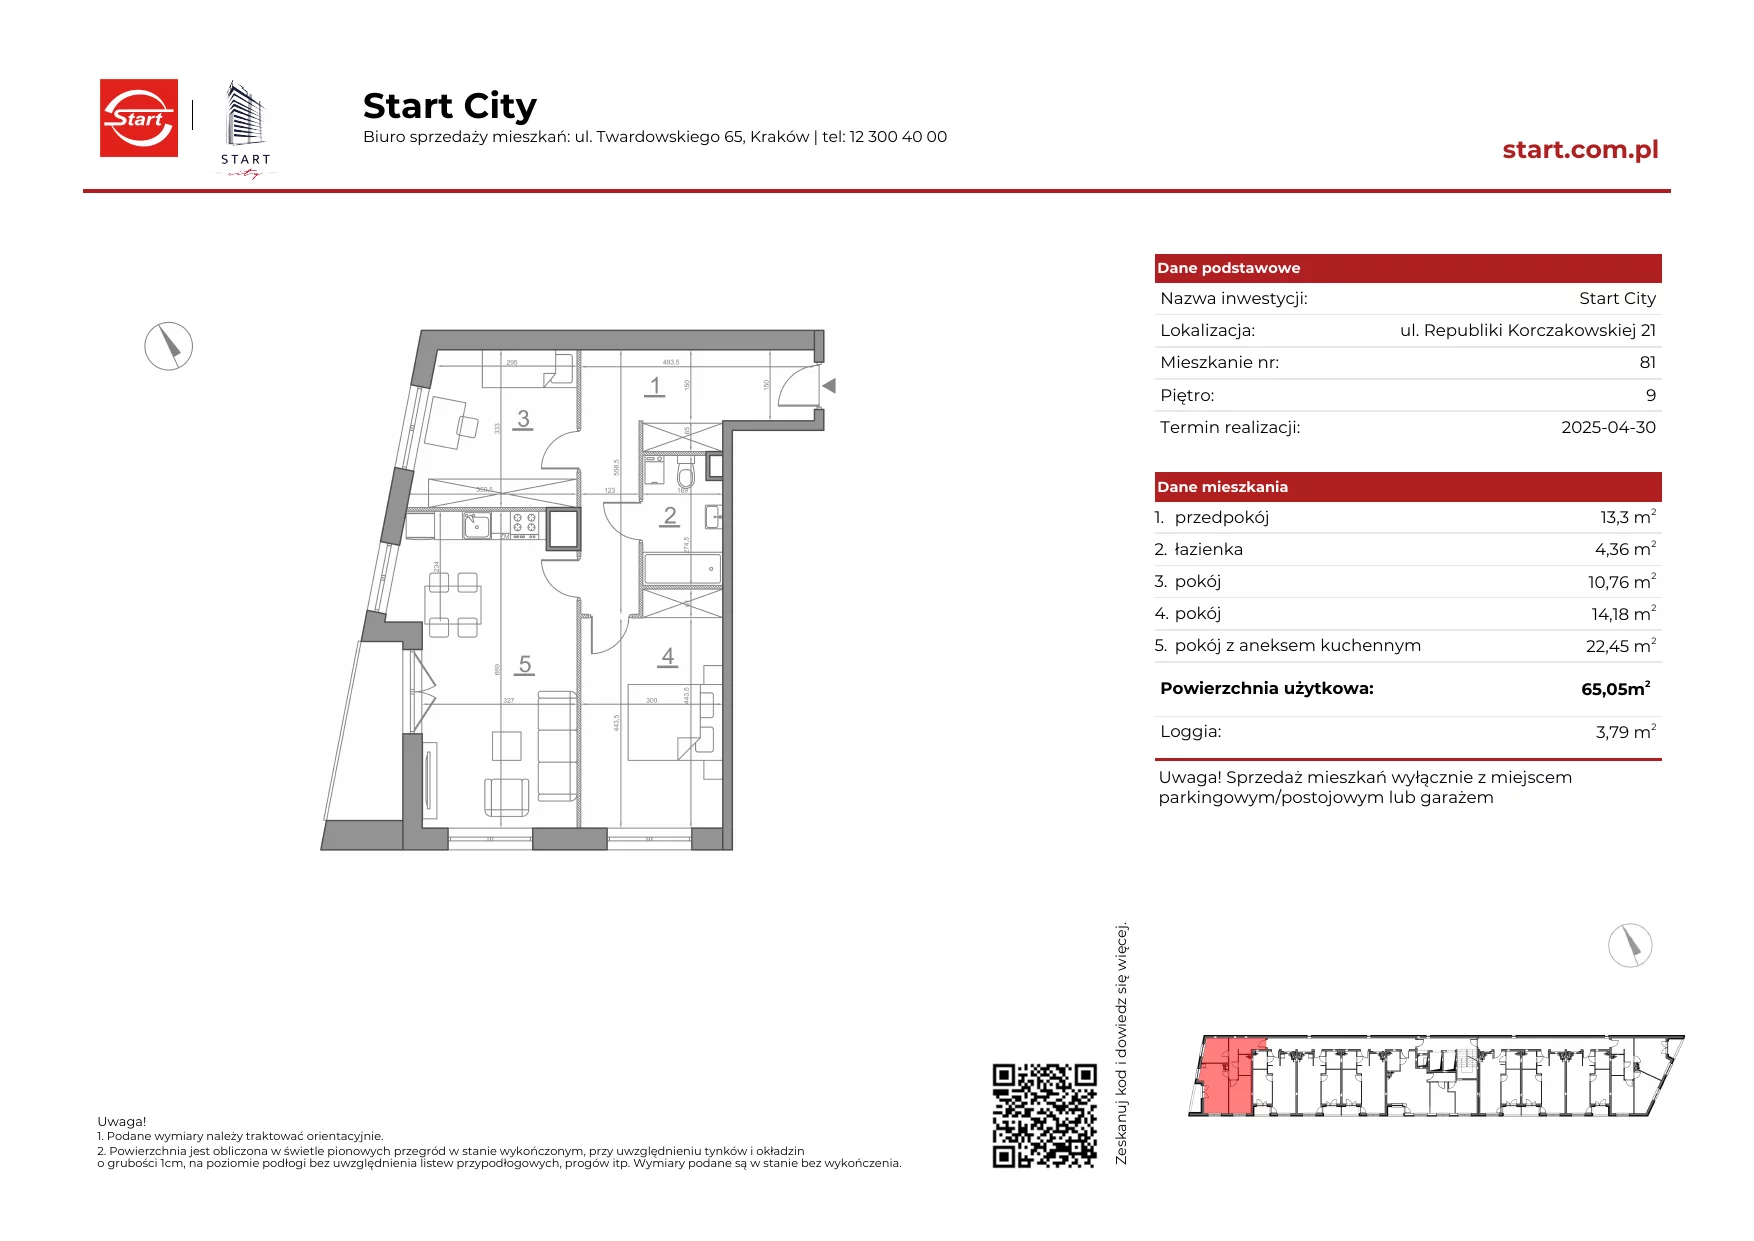 Mieszkanie 65,05 m², piętro 9, oferta nr 21/81, Start City, Kraków, Bieżanów-Prokocim, ul. Republiki Korczakowskiej 21